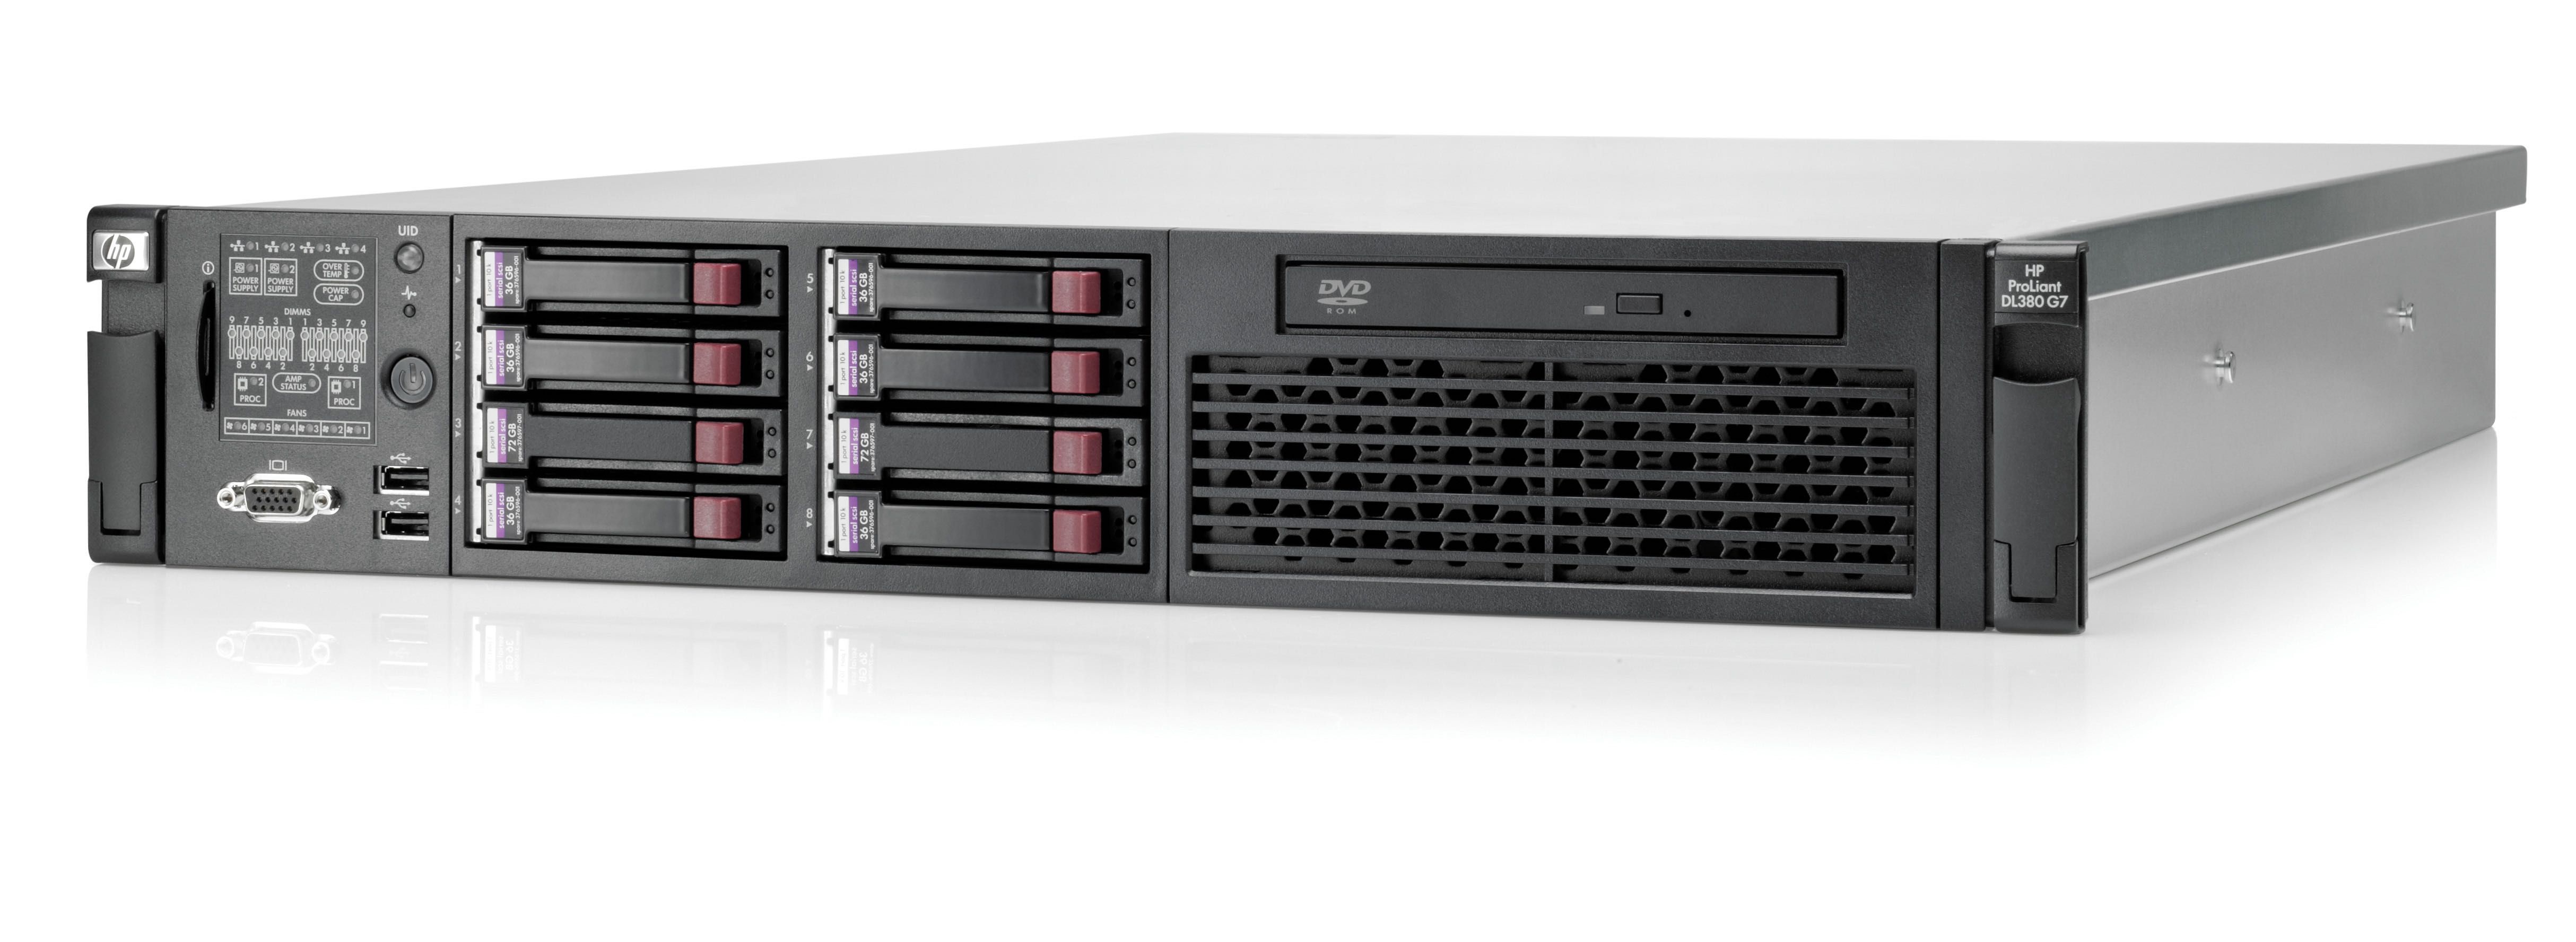 Server HP DL380 G7 2 x E5620, 8 x 300GB SAS, 72GB DDR3, 2 x PSU, RAILS